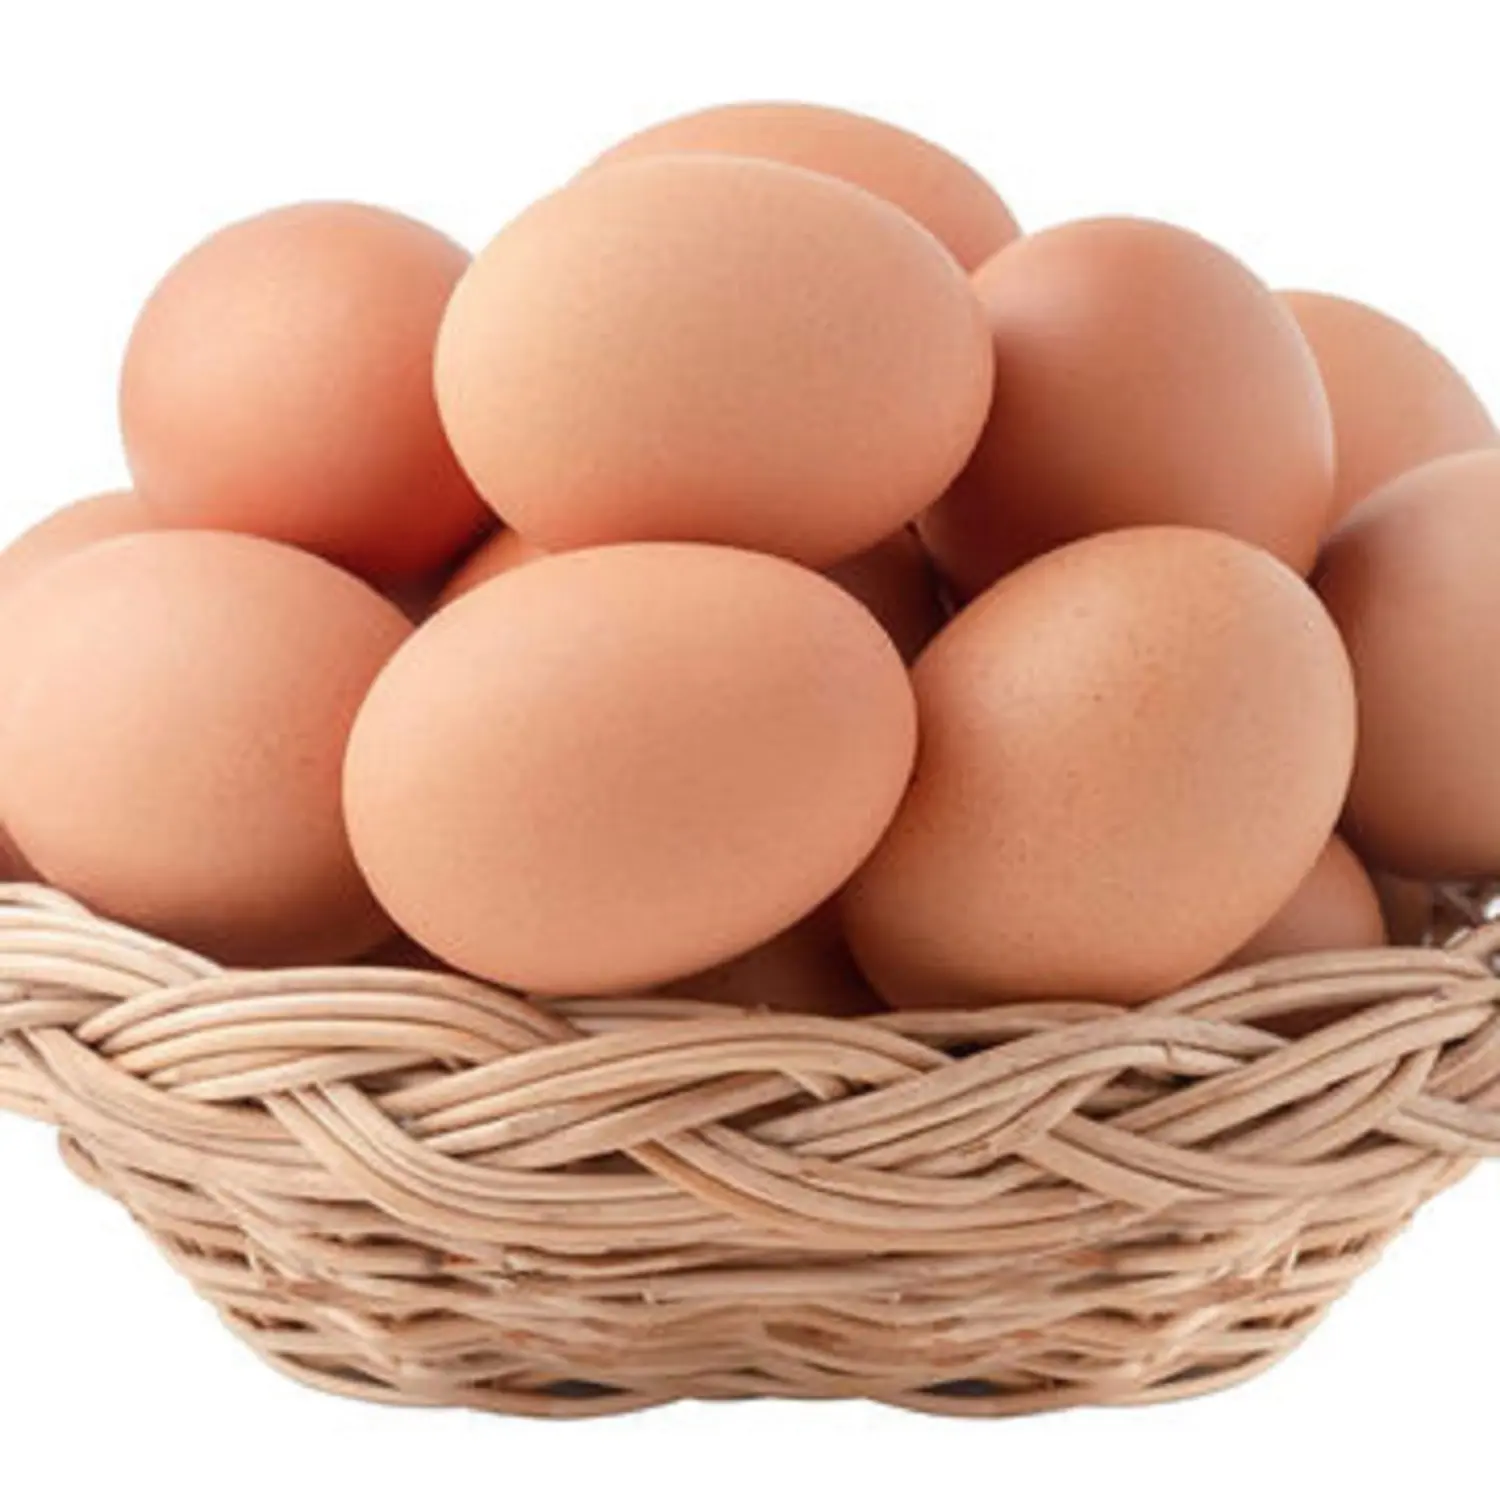 Prezzo all'ingrosso uova di gallina con guscio marrone e bianco